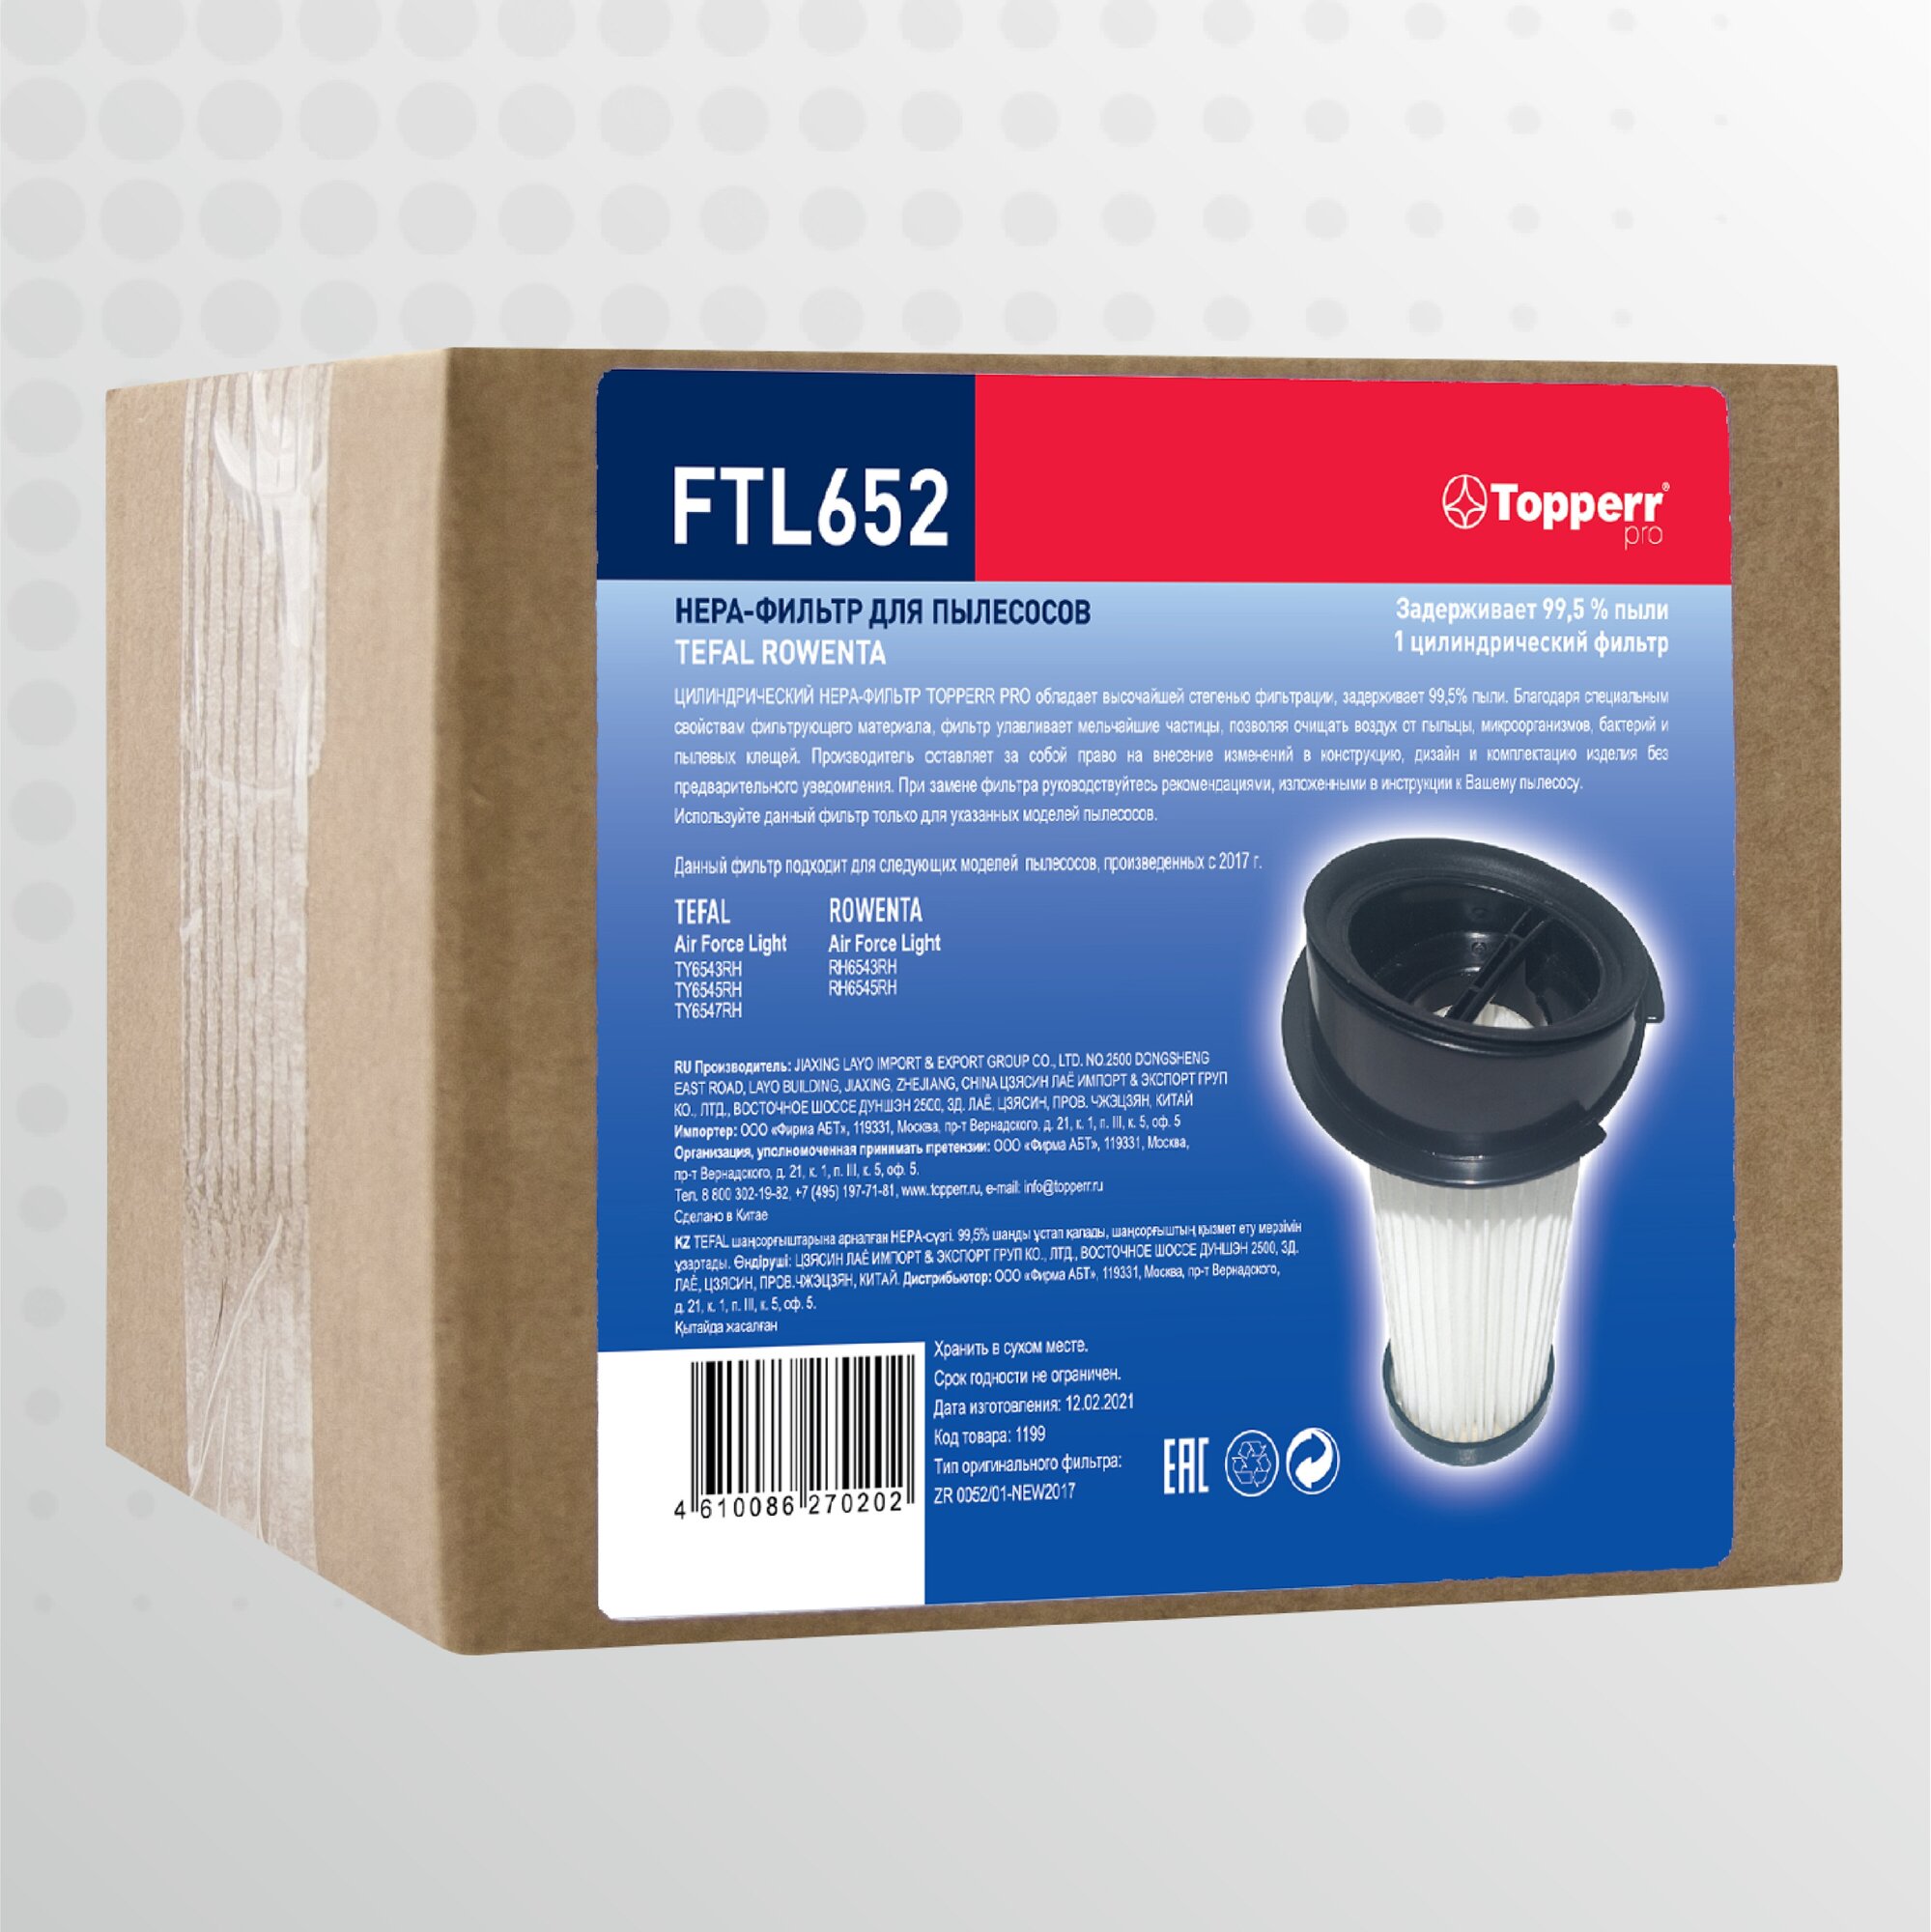 НЕРА-фильтр TOPPERR , для пылесосов Tefal, Rowenta, Данный фильтр подходит для следующих моделей пылесосов: TefalAir Force Light произведенных после 2019 года TY6543RH, TY6545RH, TY6547RH. Rowenta Air - фото №5